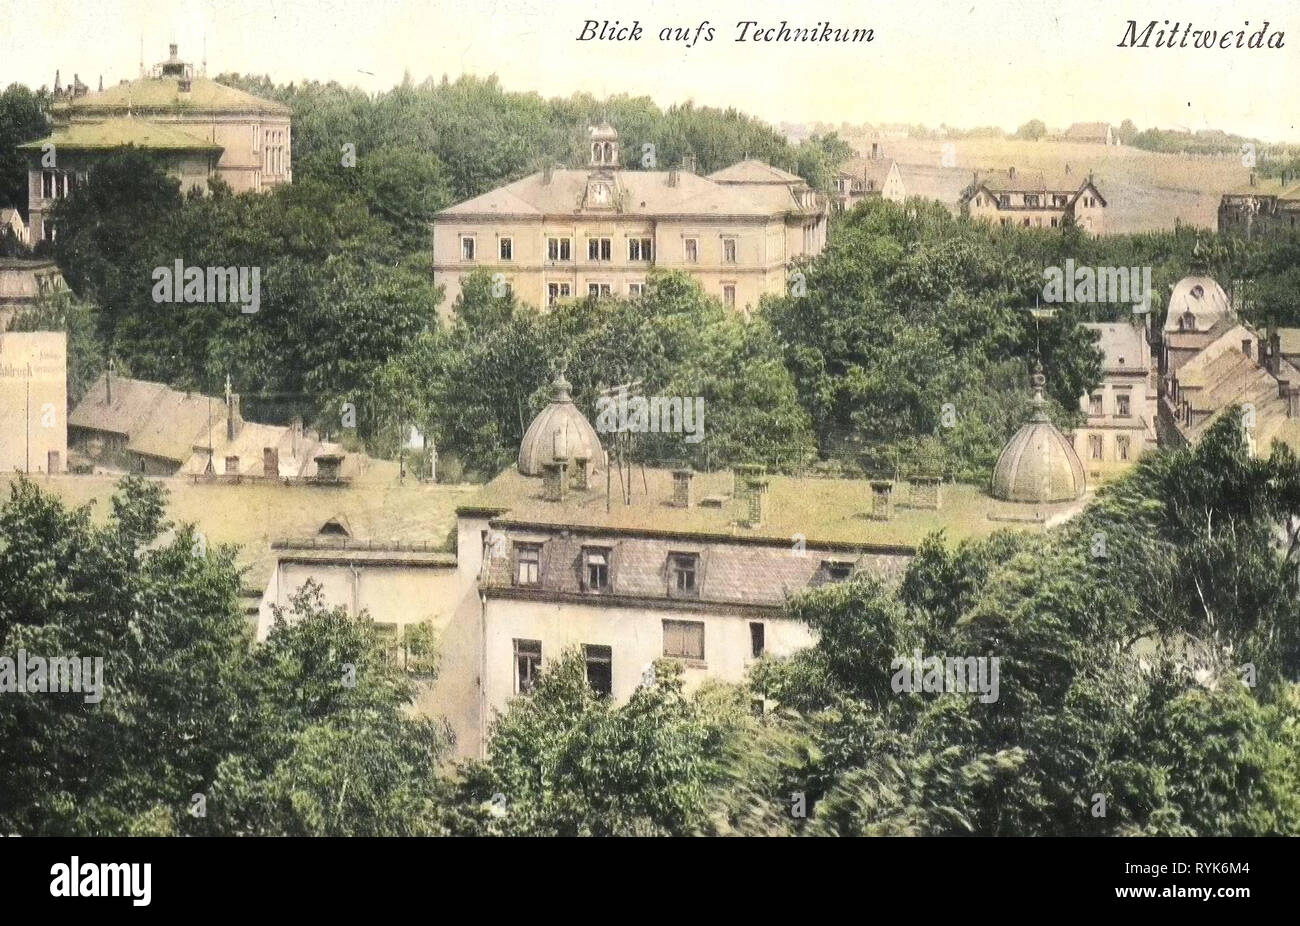 Schulen im Landkreis Mittelsachsen, Gebäude in Mittweida, 1918, Landkreis Mittelsachsen, Mittweida, Technikum, Deutschland Stockfoto